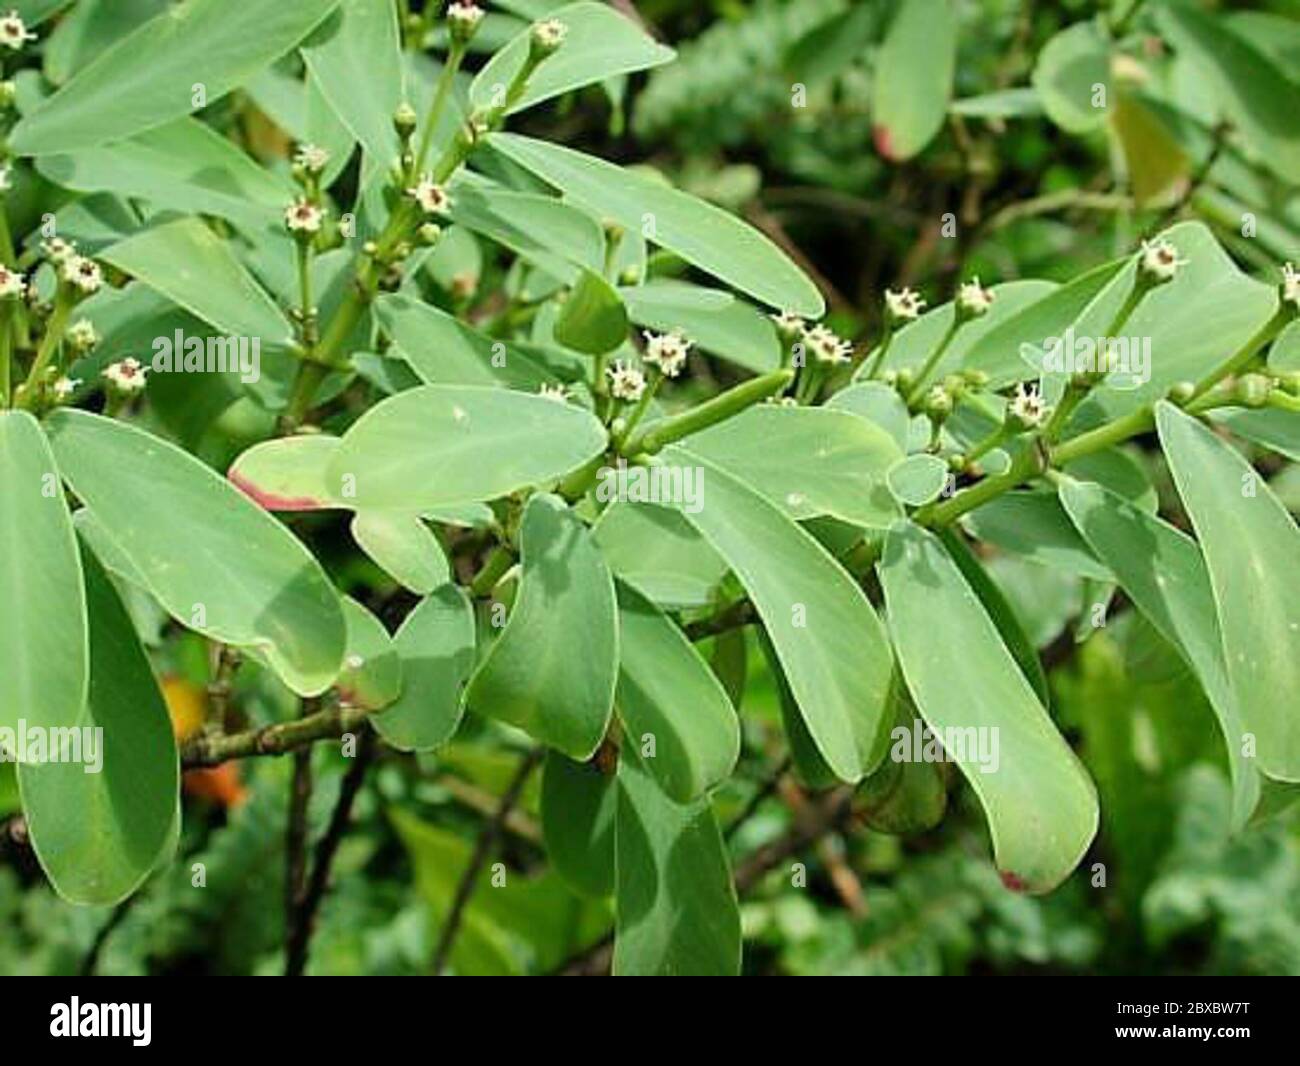 Chamaesycecelastroidescelastroides1.jpg Euphorbia celastroides Boiss var celastroides. Stock Photo